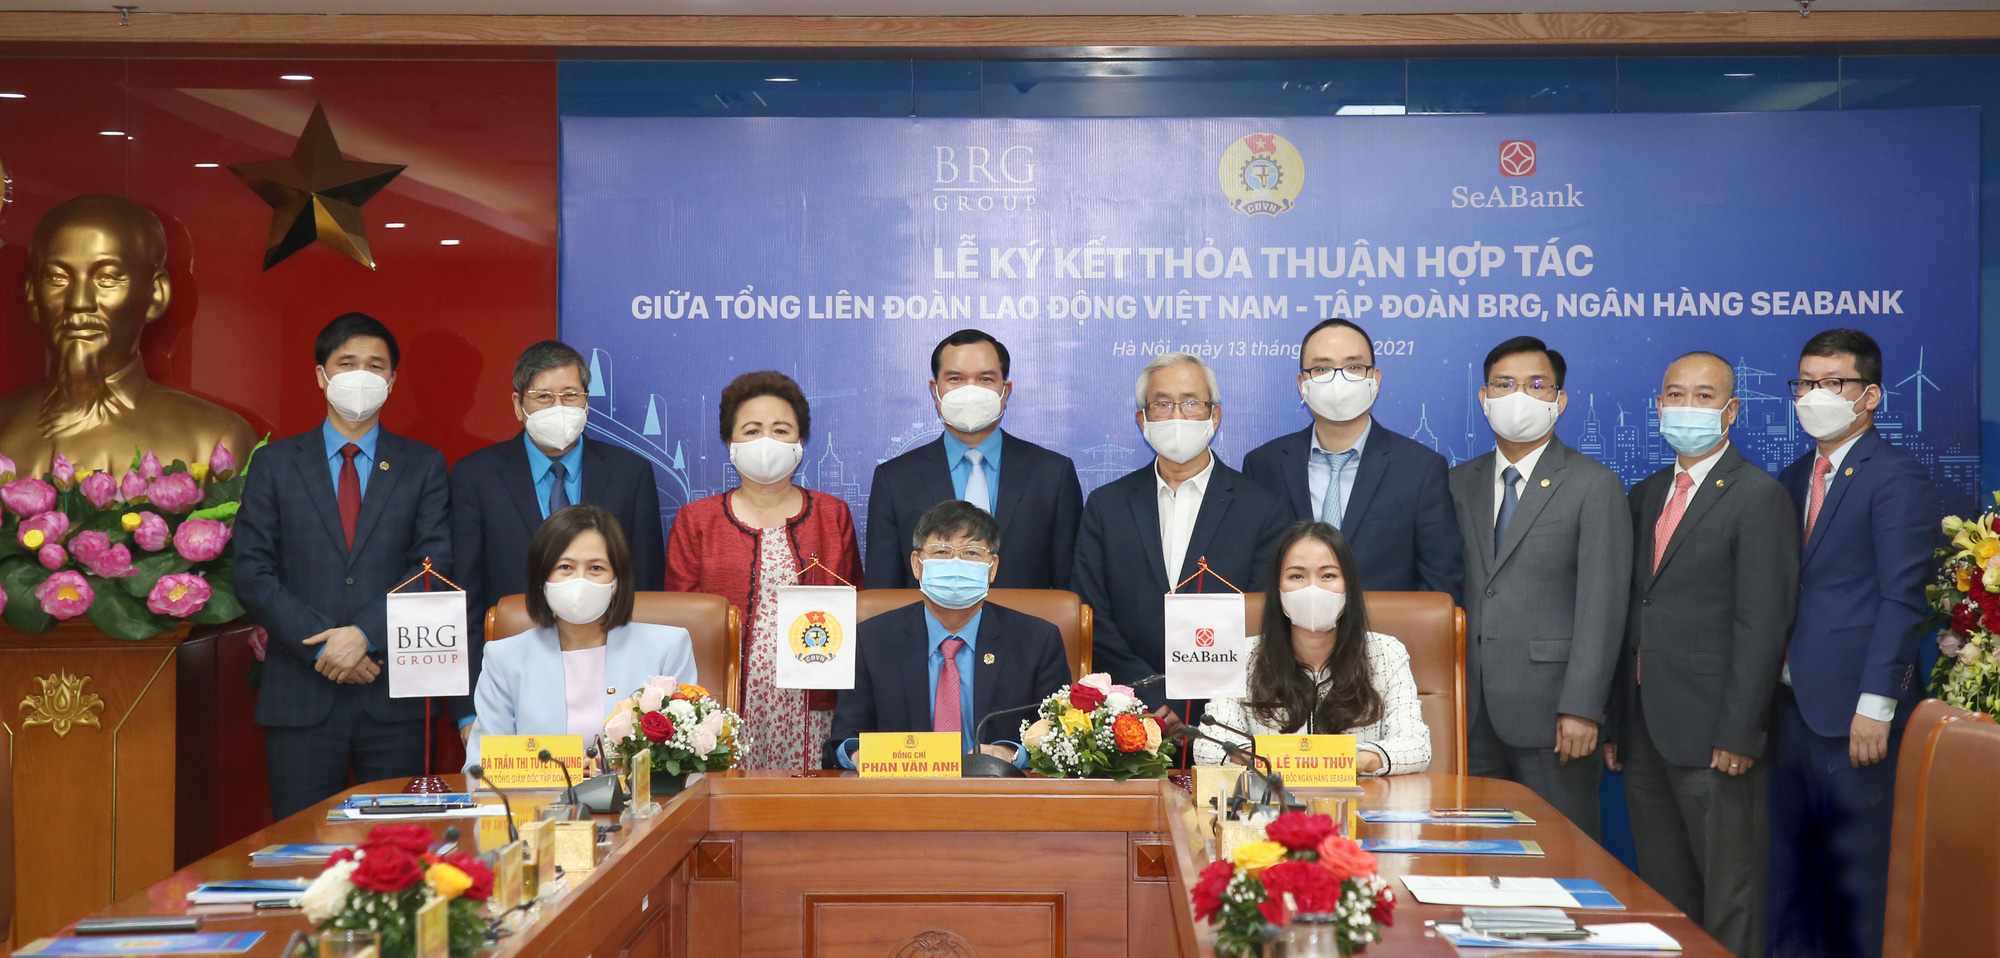 Tổng Liên đoàn Lao động Việt Nam ký kết Thỏa thuận hợp tác với Tập đoàn BRG và Ngân hàng SeABank - Ảnh 1.